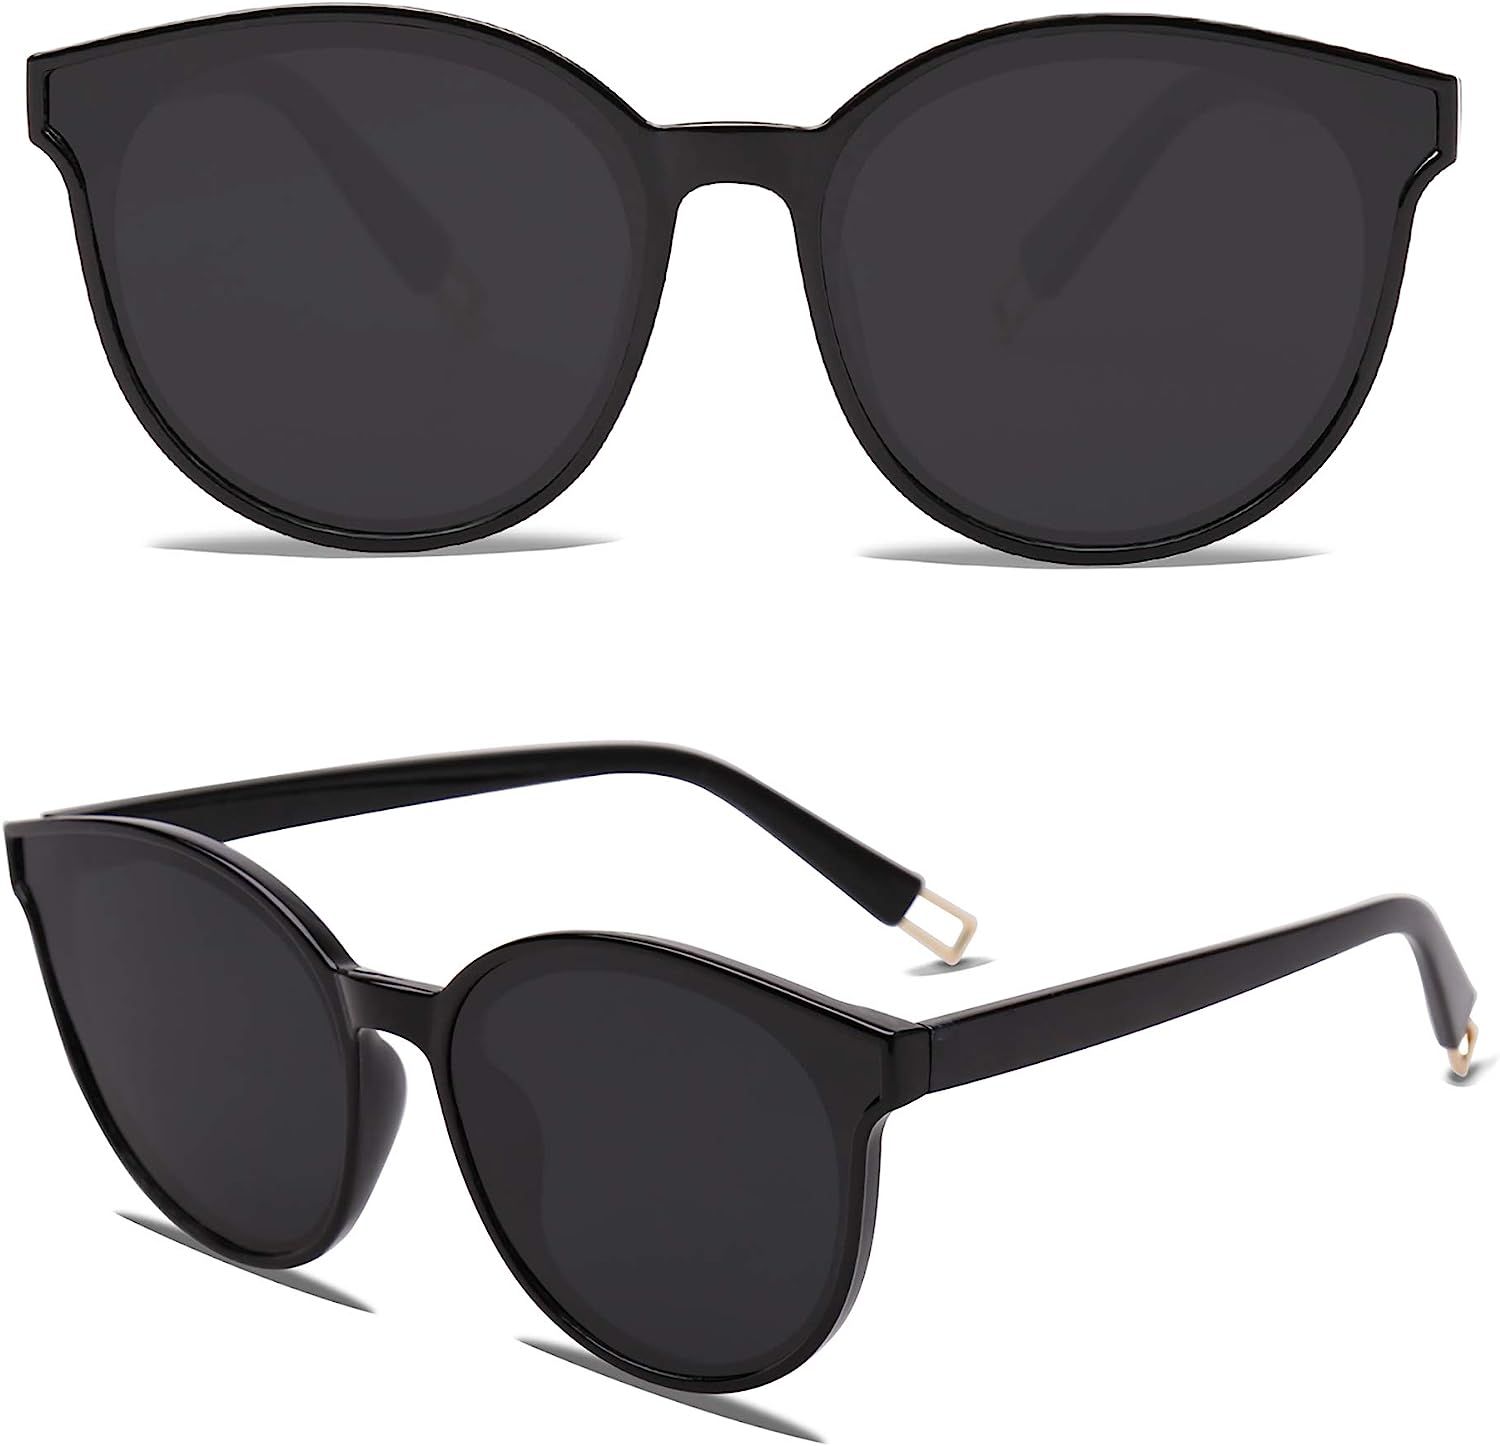 Fashion Round Sunglasses for Women Men Oversized Vintage Shades SJ2057 | Amazon (US)